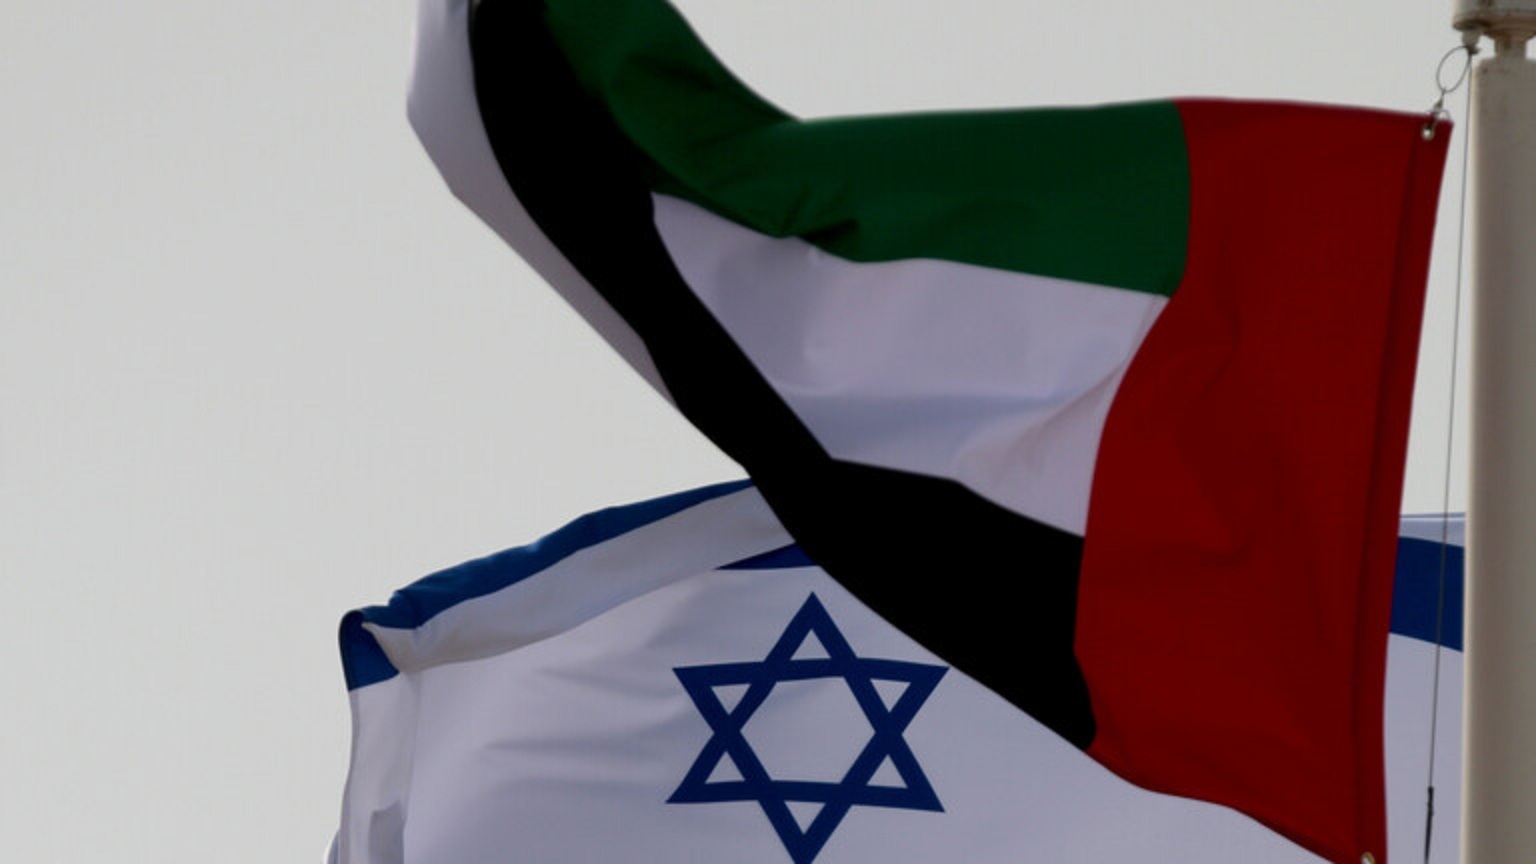 تقرير: أول مناورات عسكرية علنية مشتركة بين الإمارات وإسرائيل